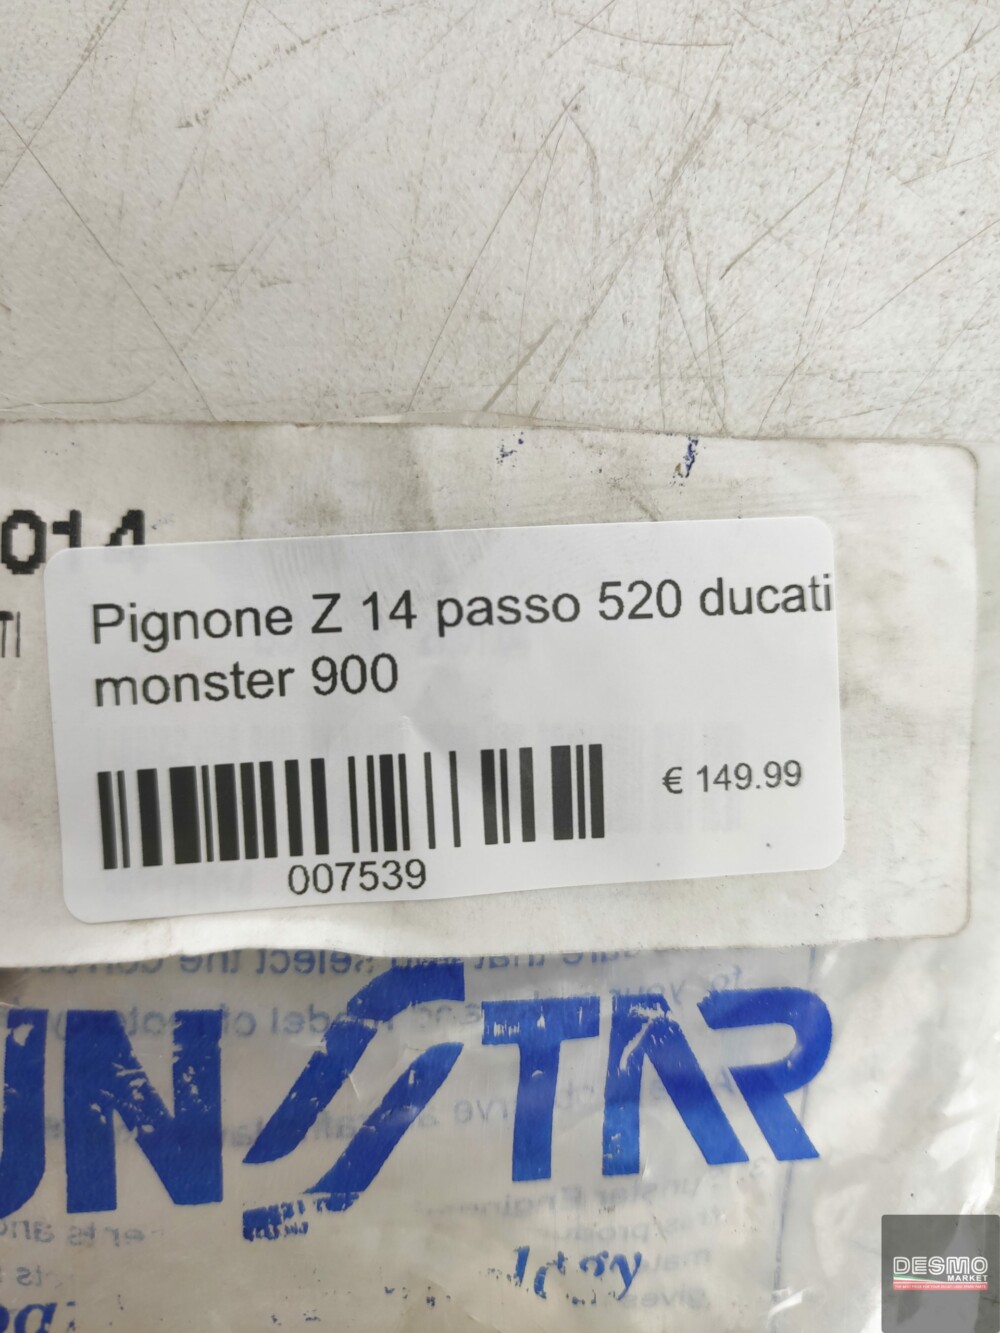 Pignone Z 14 passo 520 ducati monster 900